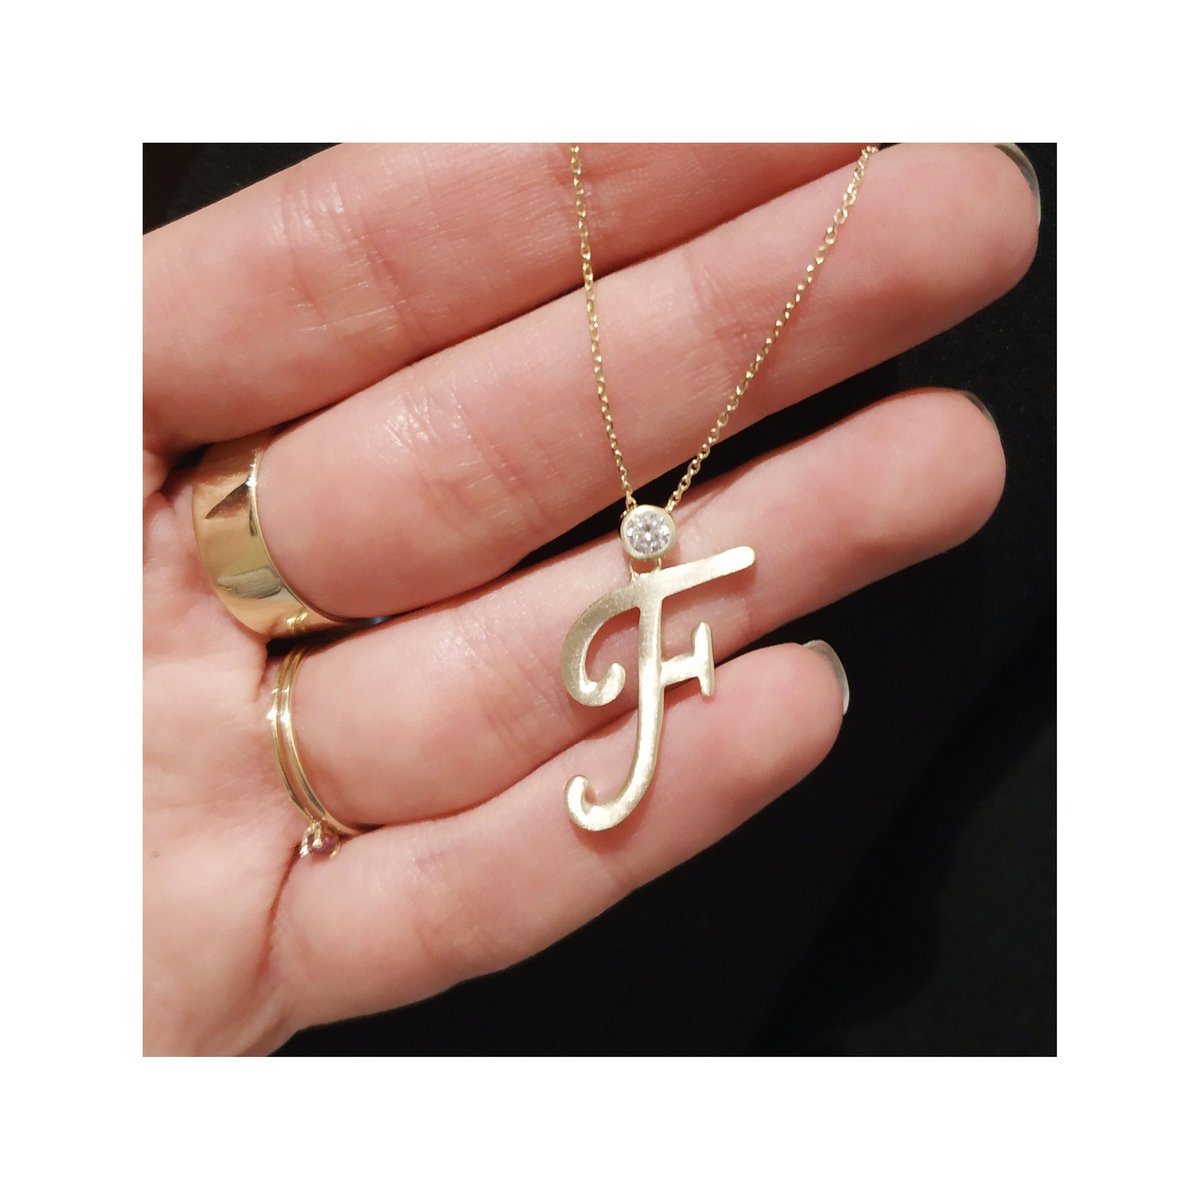 Kişiye özel tasarladığımız Persona Harf Altın Kolyeler %20 indirimli fiyatlarıyla pennajewels.com'da sizleri bekliyor! #kişiyeözelhediyeler #harfkolye
#harf #kolye #letternecklace #necklace #inci #altın #kolye #jewelry #jewels #jewellery #design #designjewelry #letter